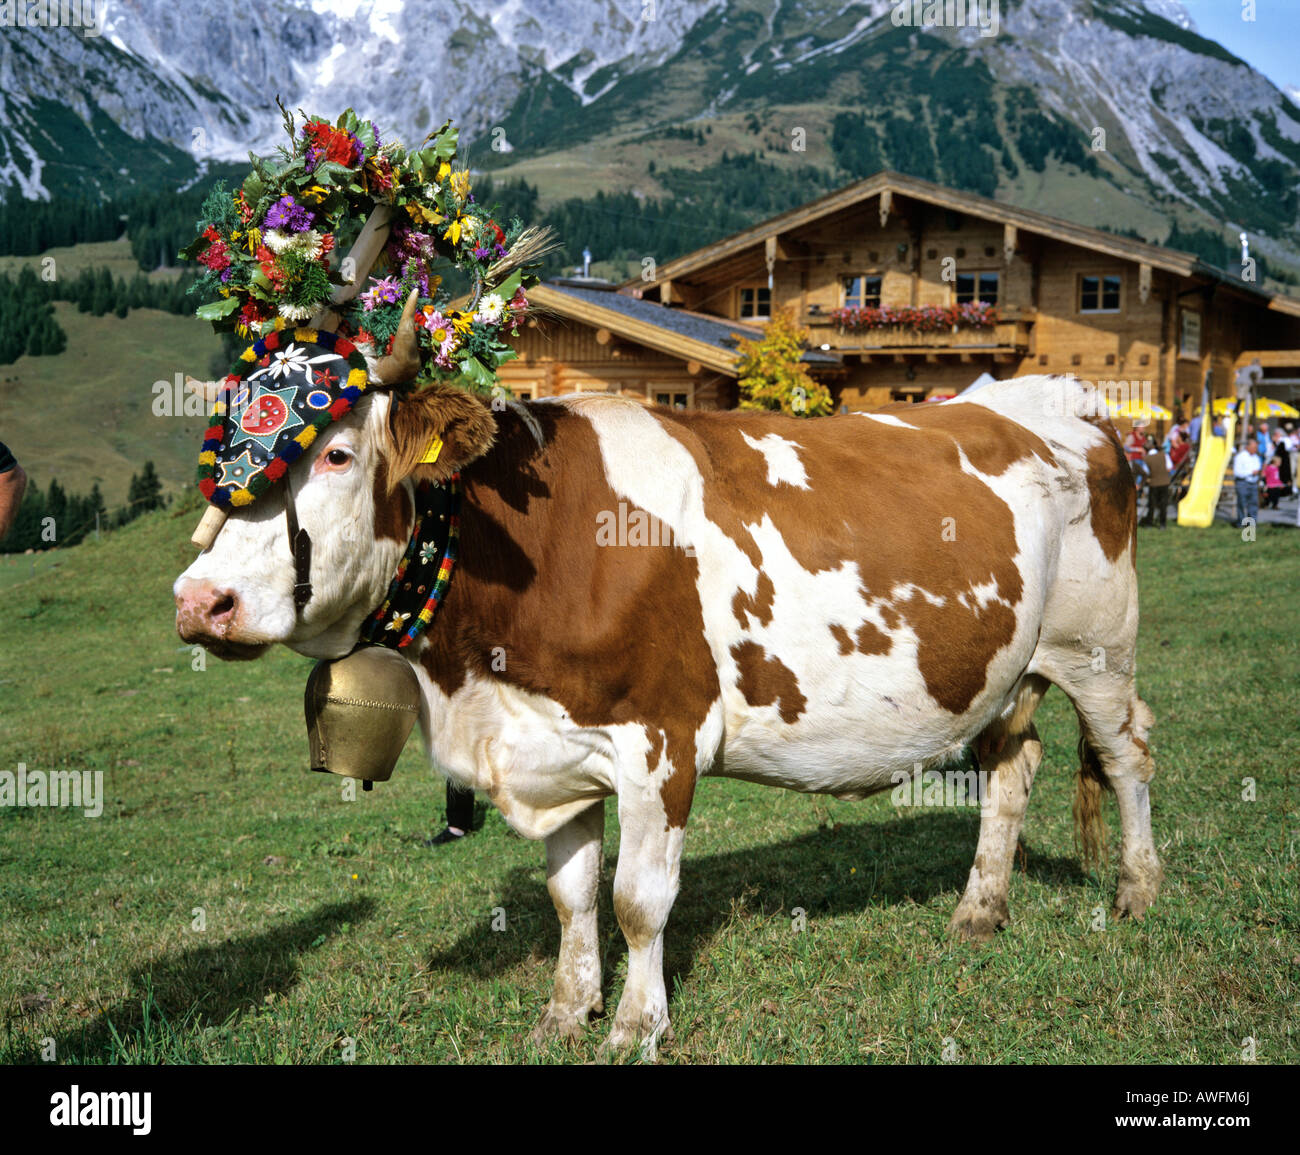 Vaches alpines décorées selon la coutume, l'Autriche, Europe Banque D'Images